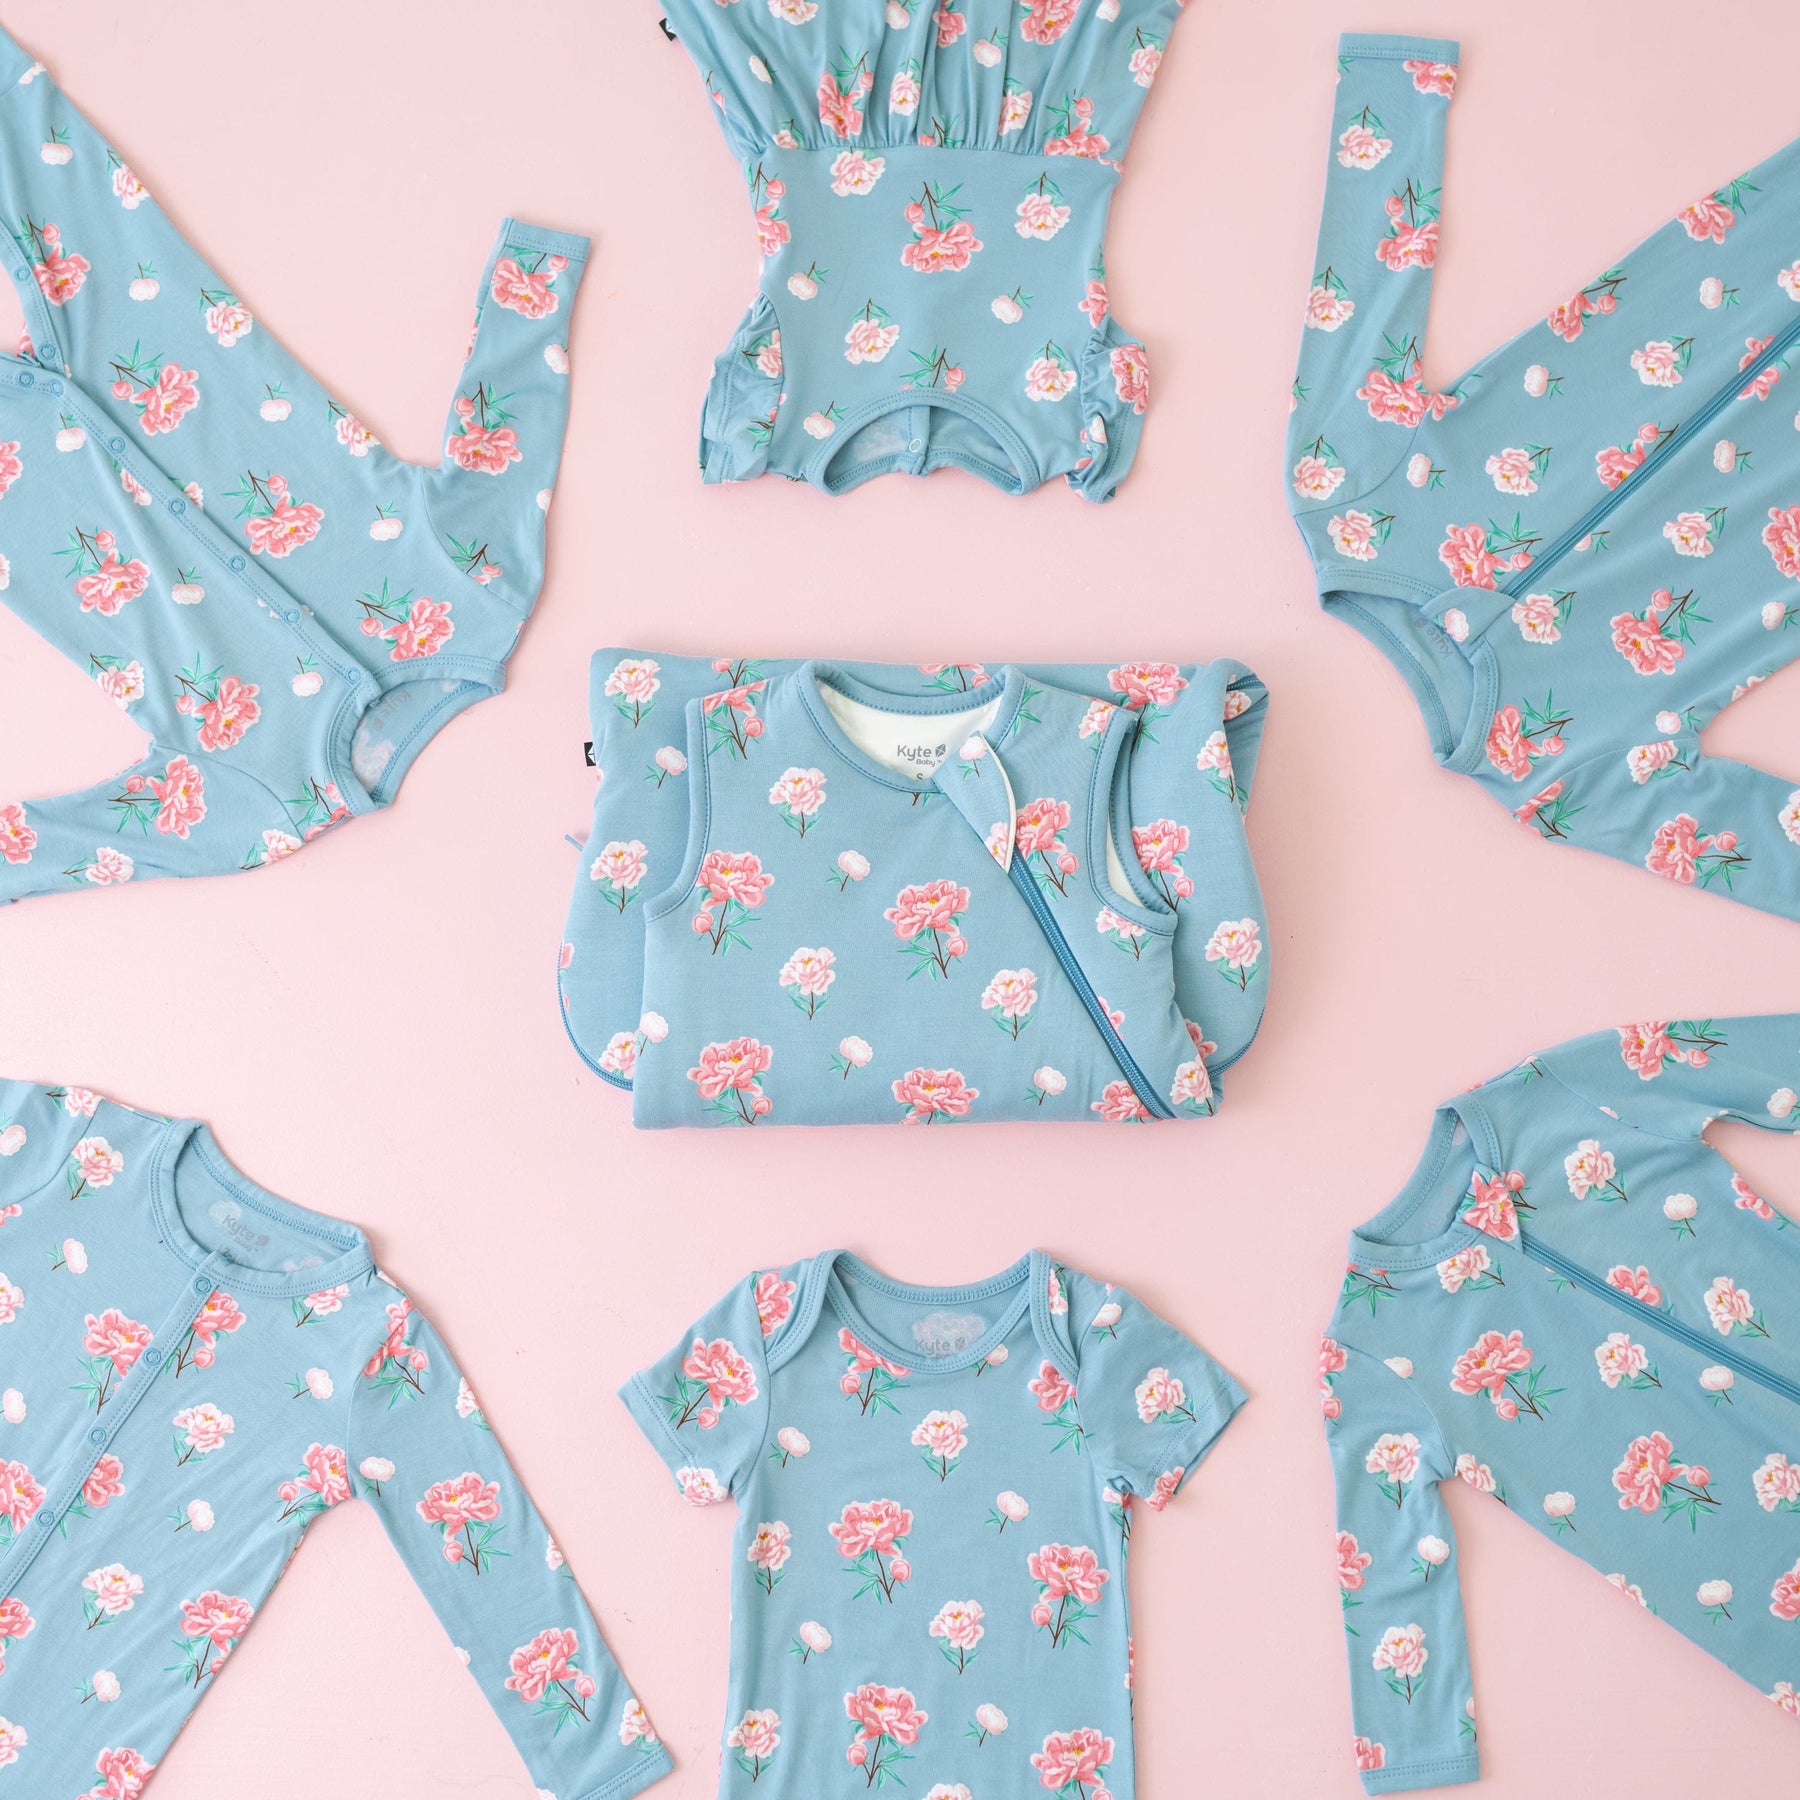 Kyte Baby Sleepwear in Peony pattern